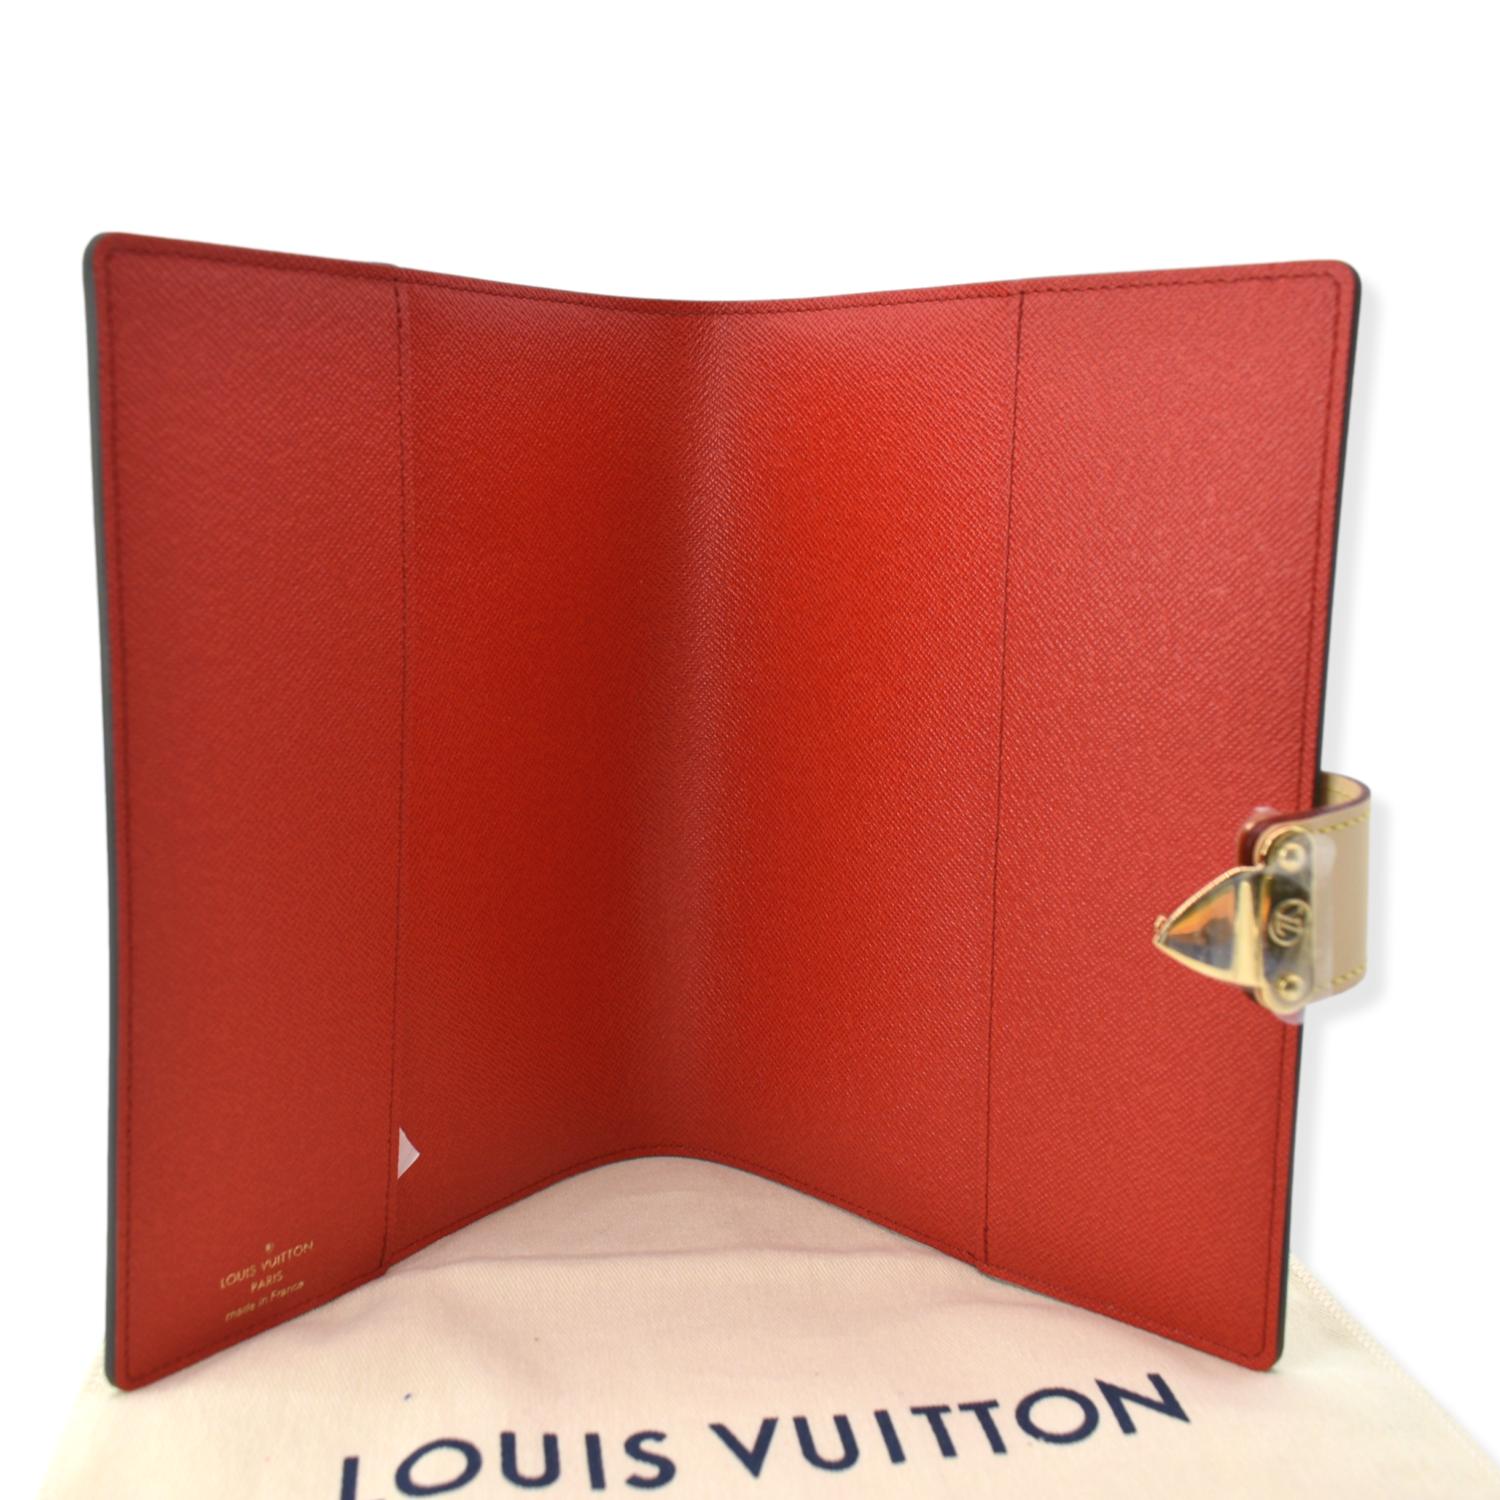 Louis Vuitton Paul Agenda Cover, Monogram with Red Interior